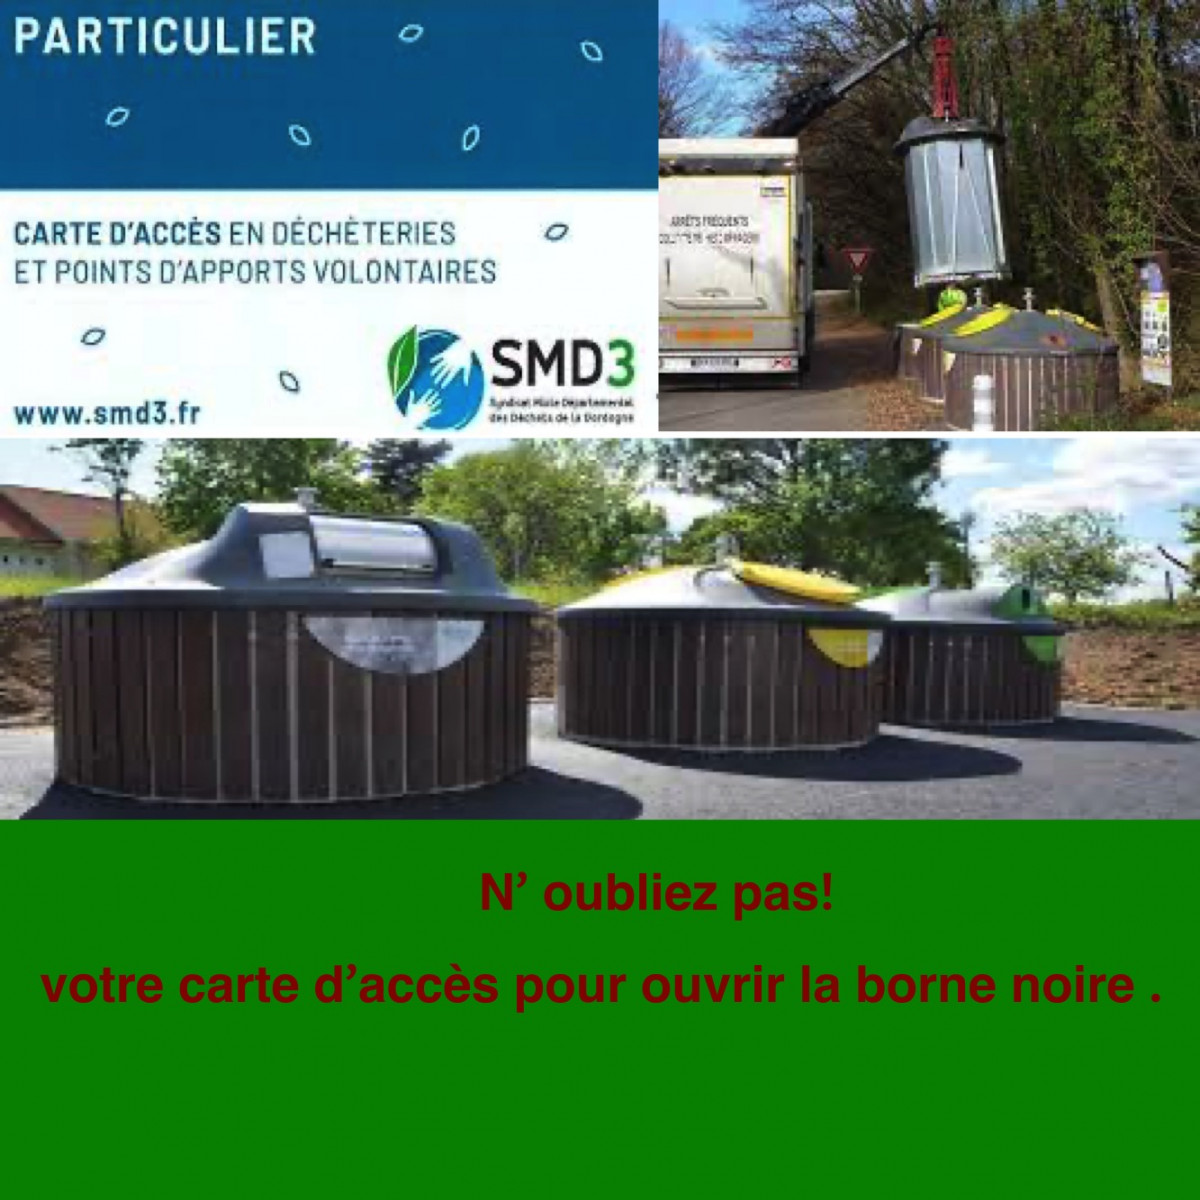 Collecte des déchets - SMD3 : Collecte, transport et traitement